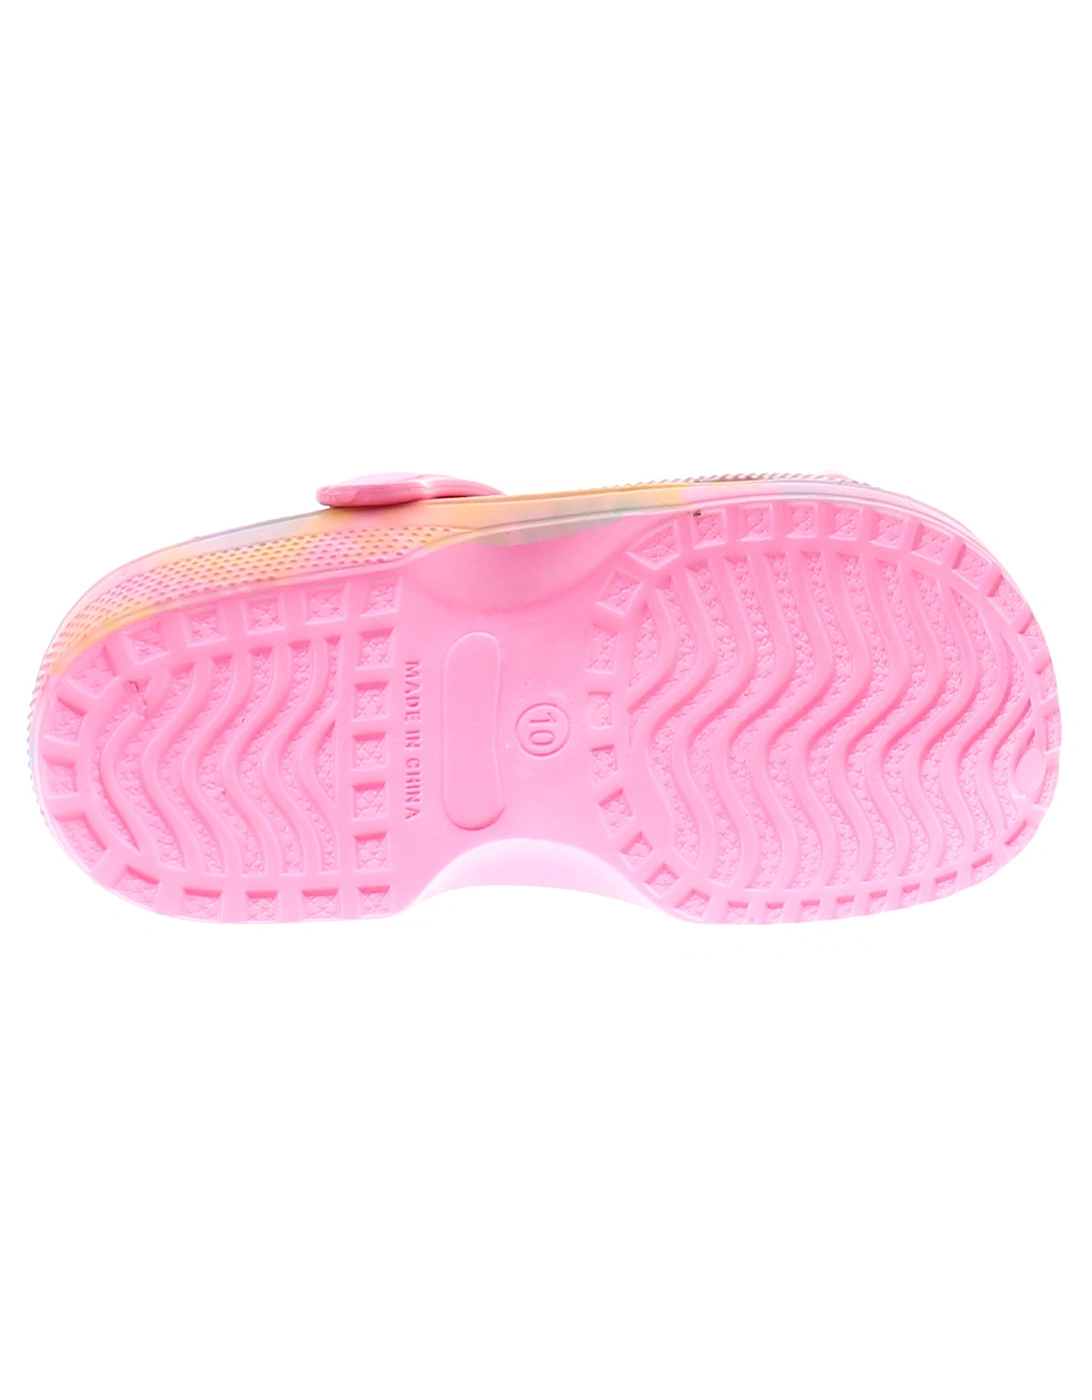 Girls Sandals Infants Sliders Clog pink UK Size